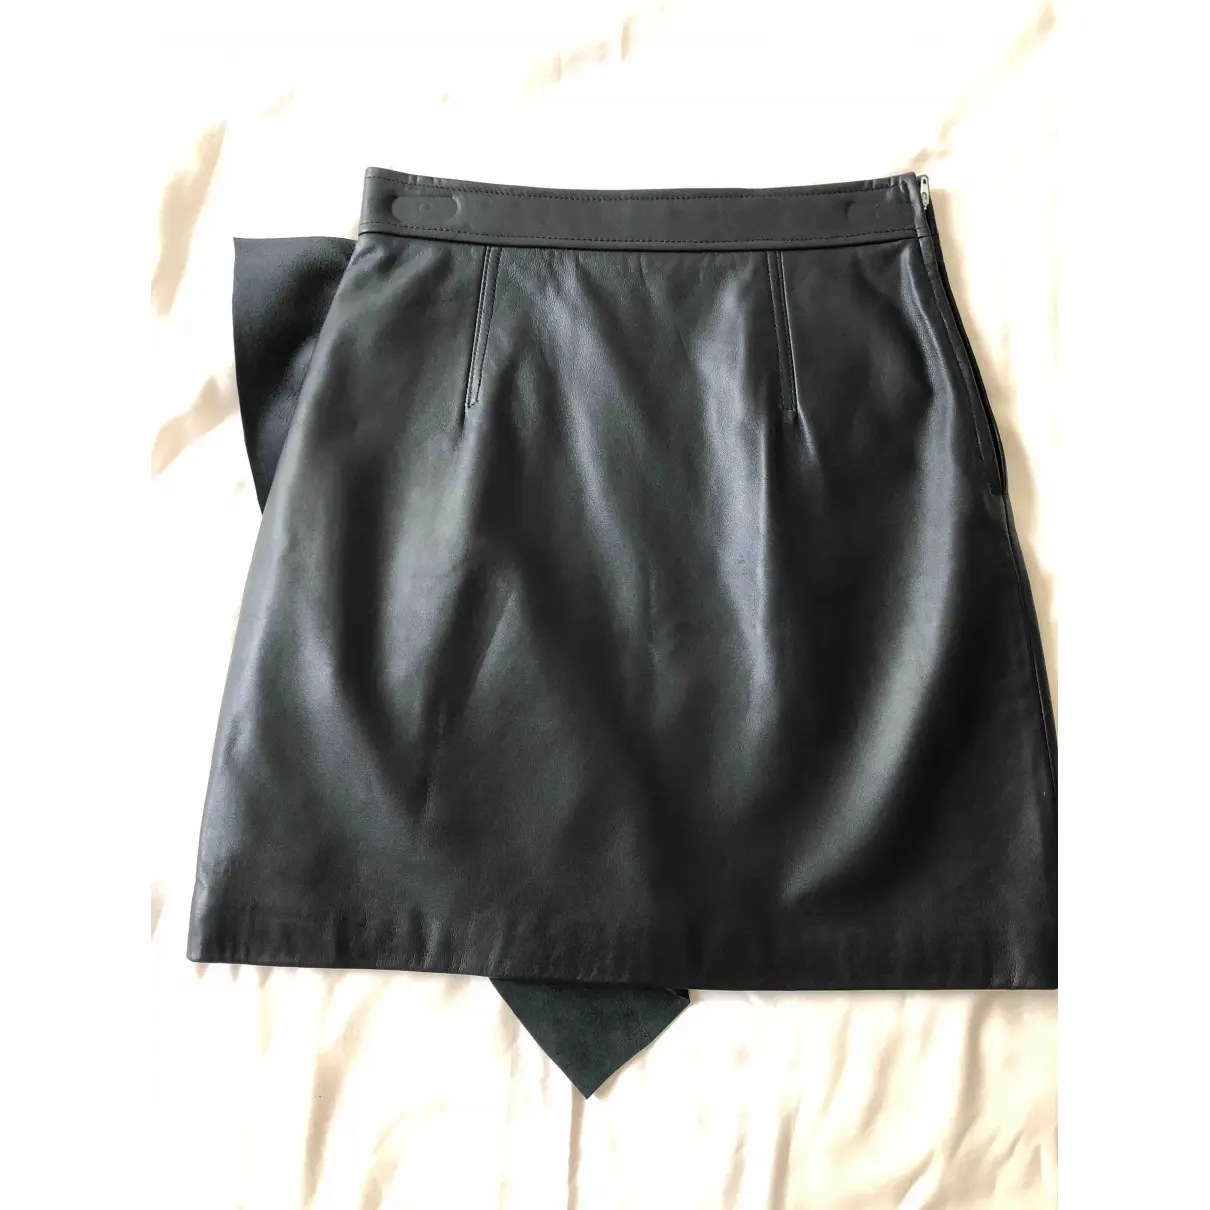 Buy Sandro Fall Winter 2019 leather mini skirt online